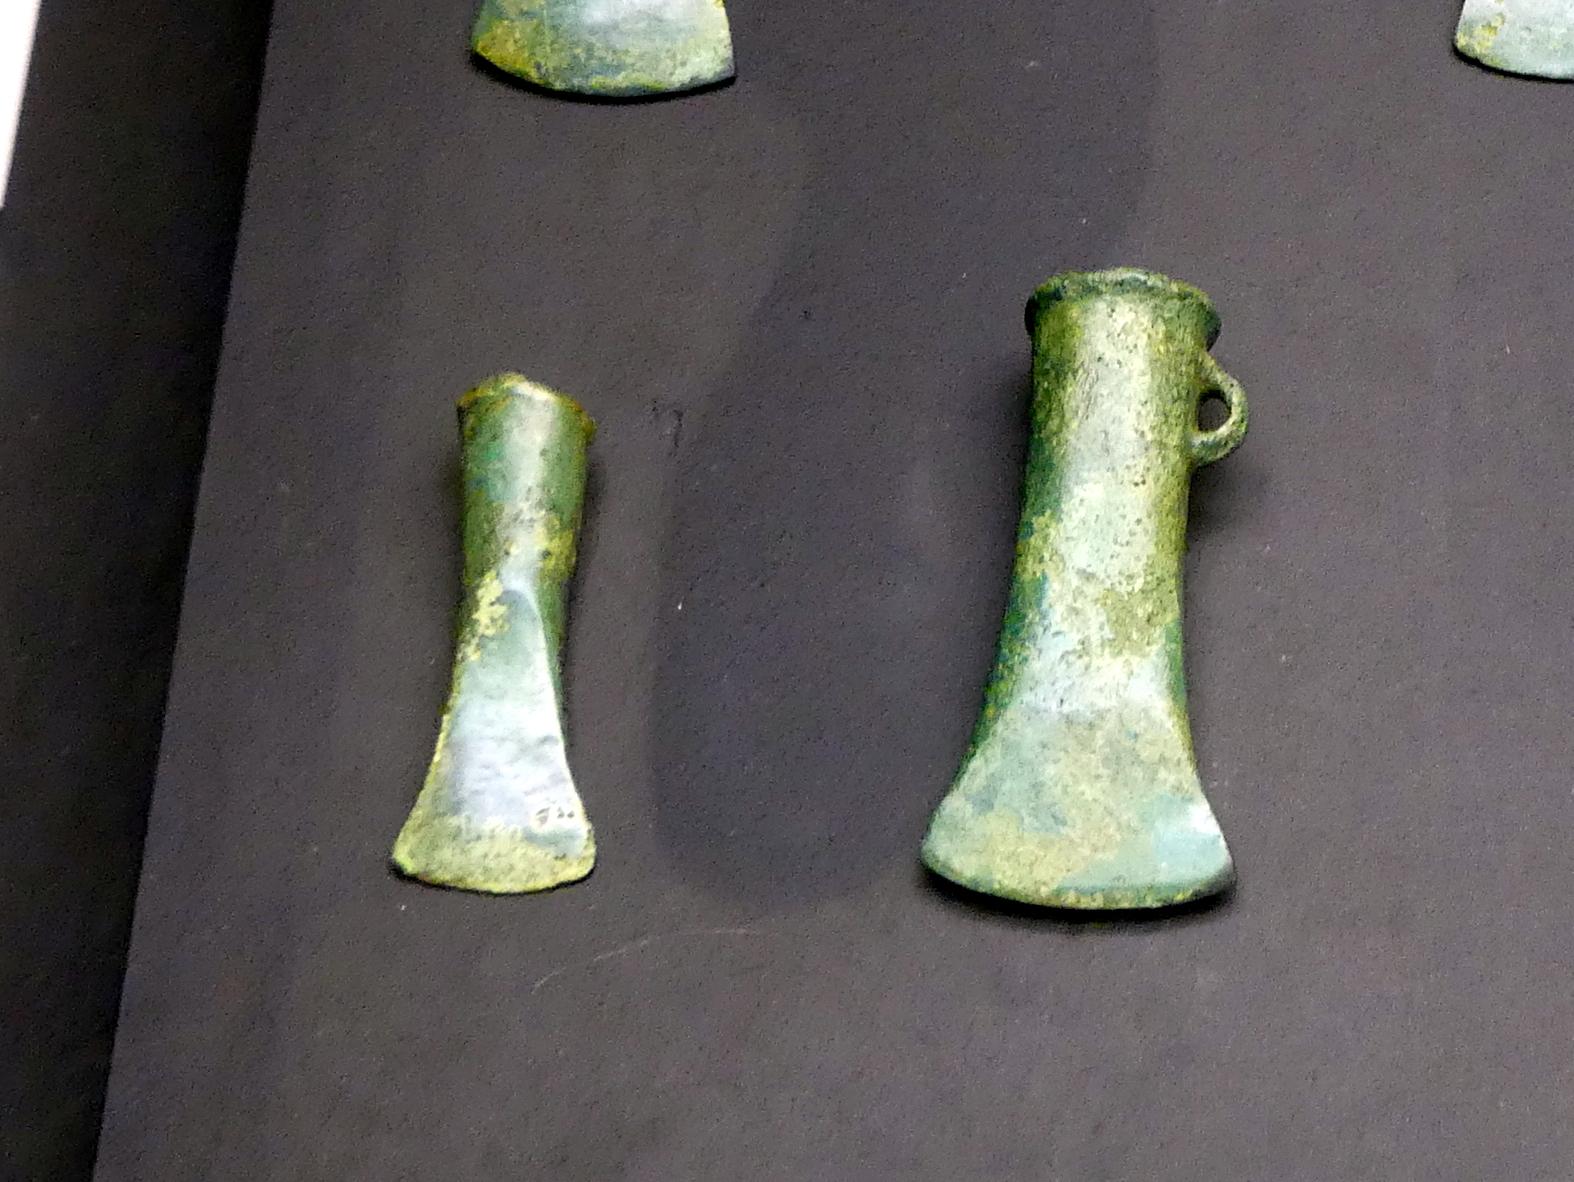 Tüllenbeile, Urnenfelderzeit, 1400 - 700 v. Chr., 900 - 700 v. Chr., Bild 1/2